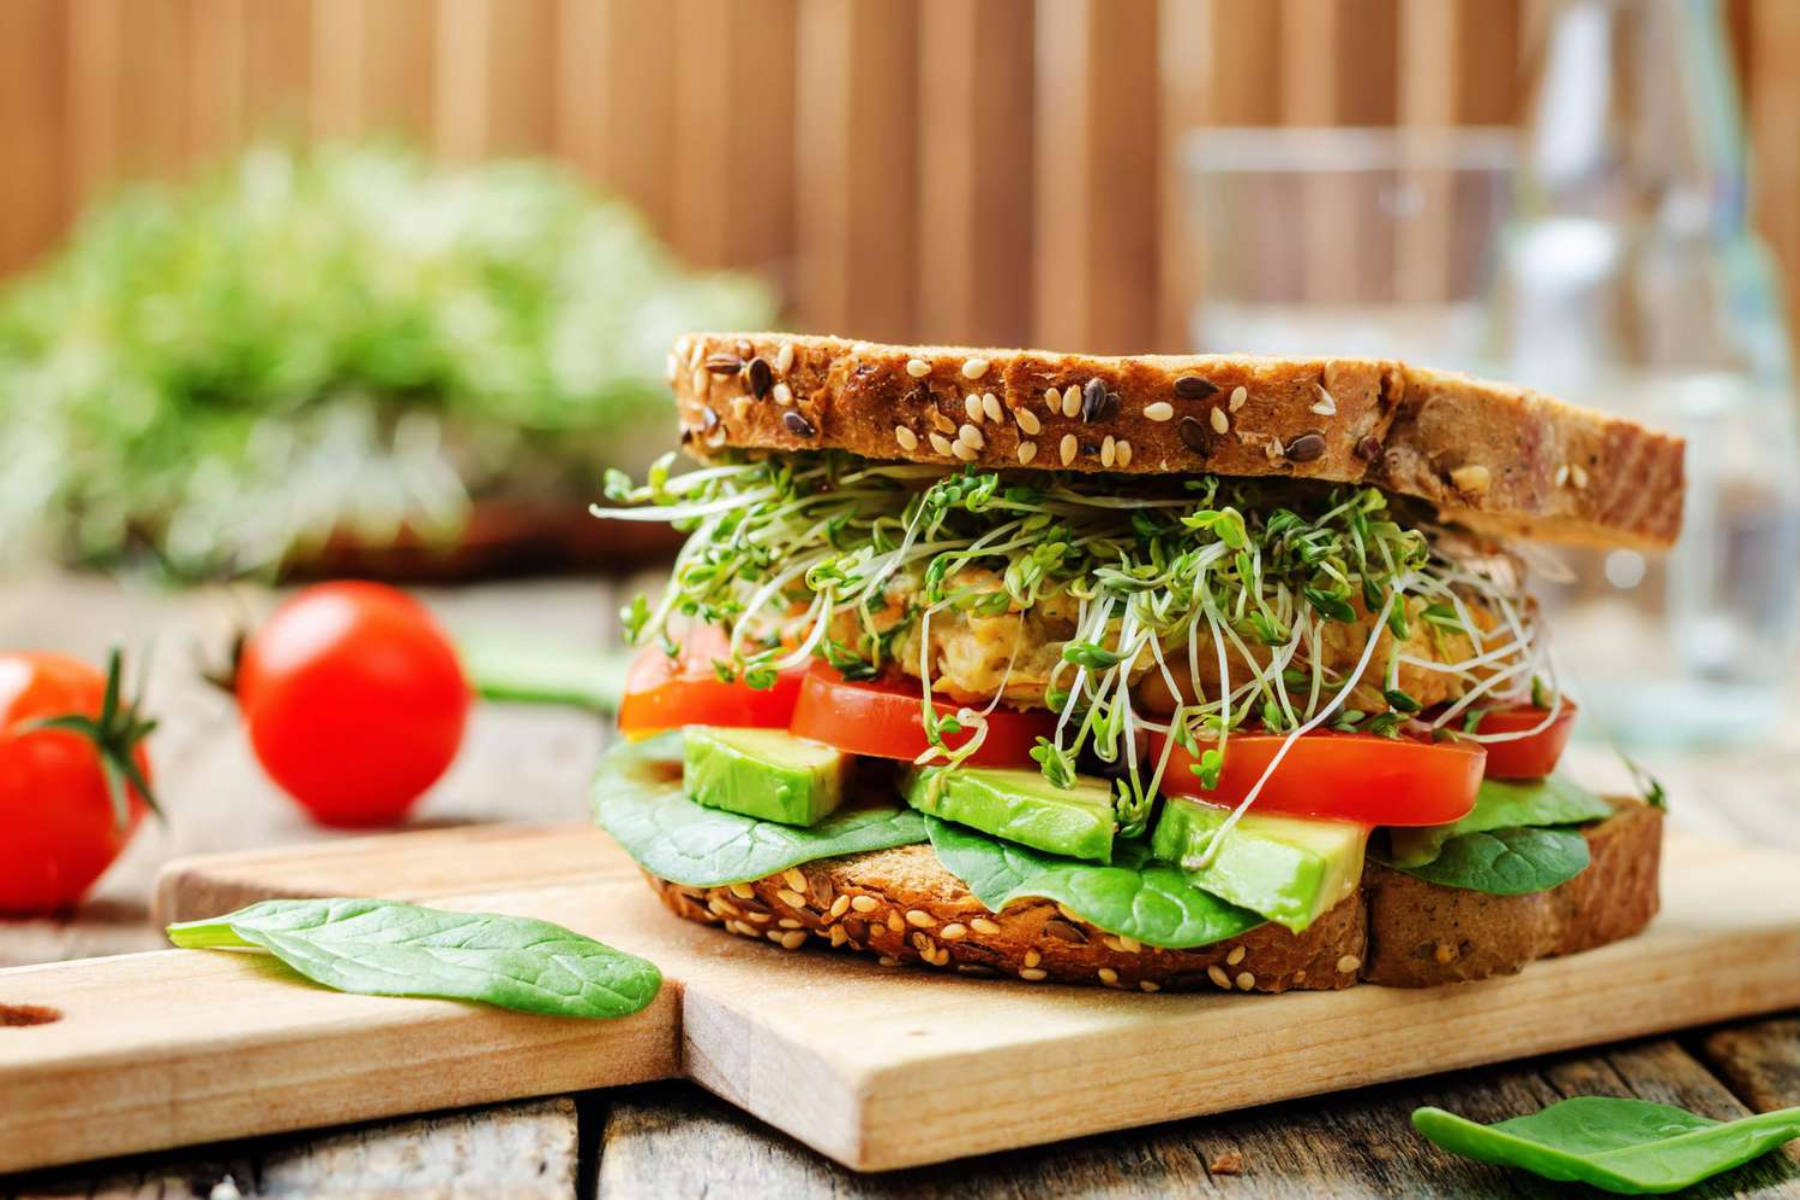 Σάντουιτς: Προσθέστε στο σάντουιτς υγιεινά υλικά γεμάτα θρεπτικά συστατικά